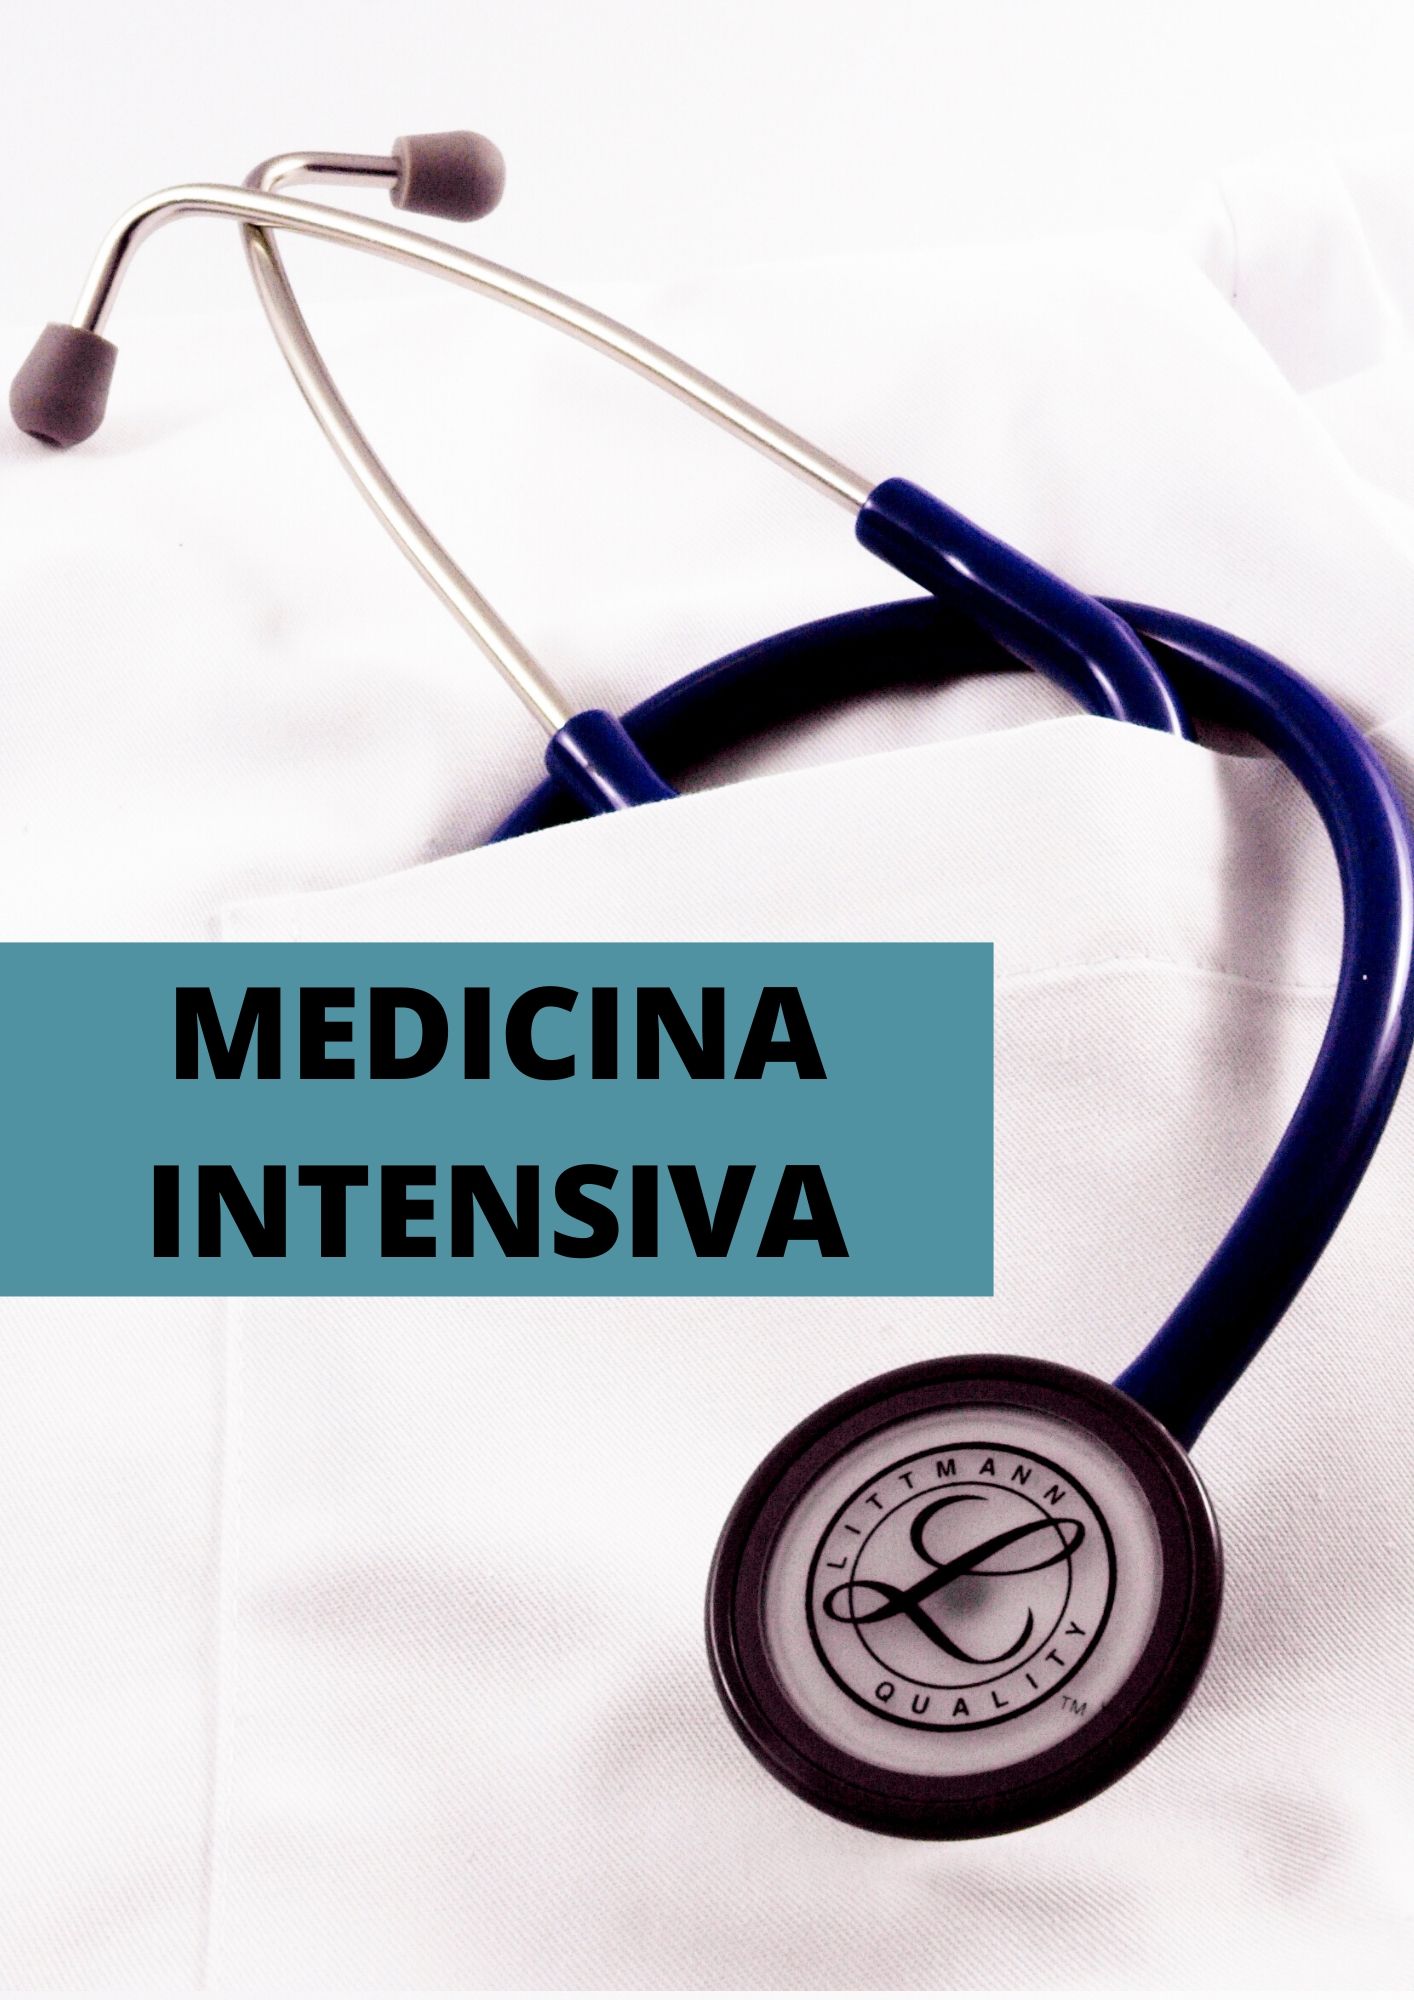 Servicio Medicina Intensiva en castellano